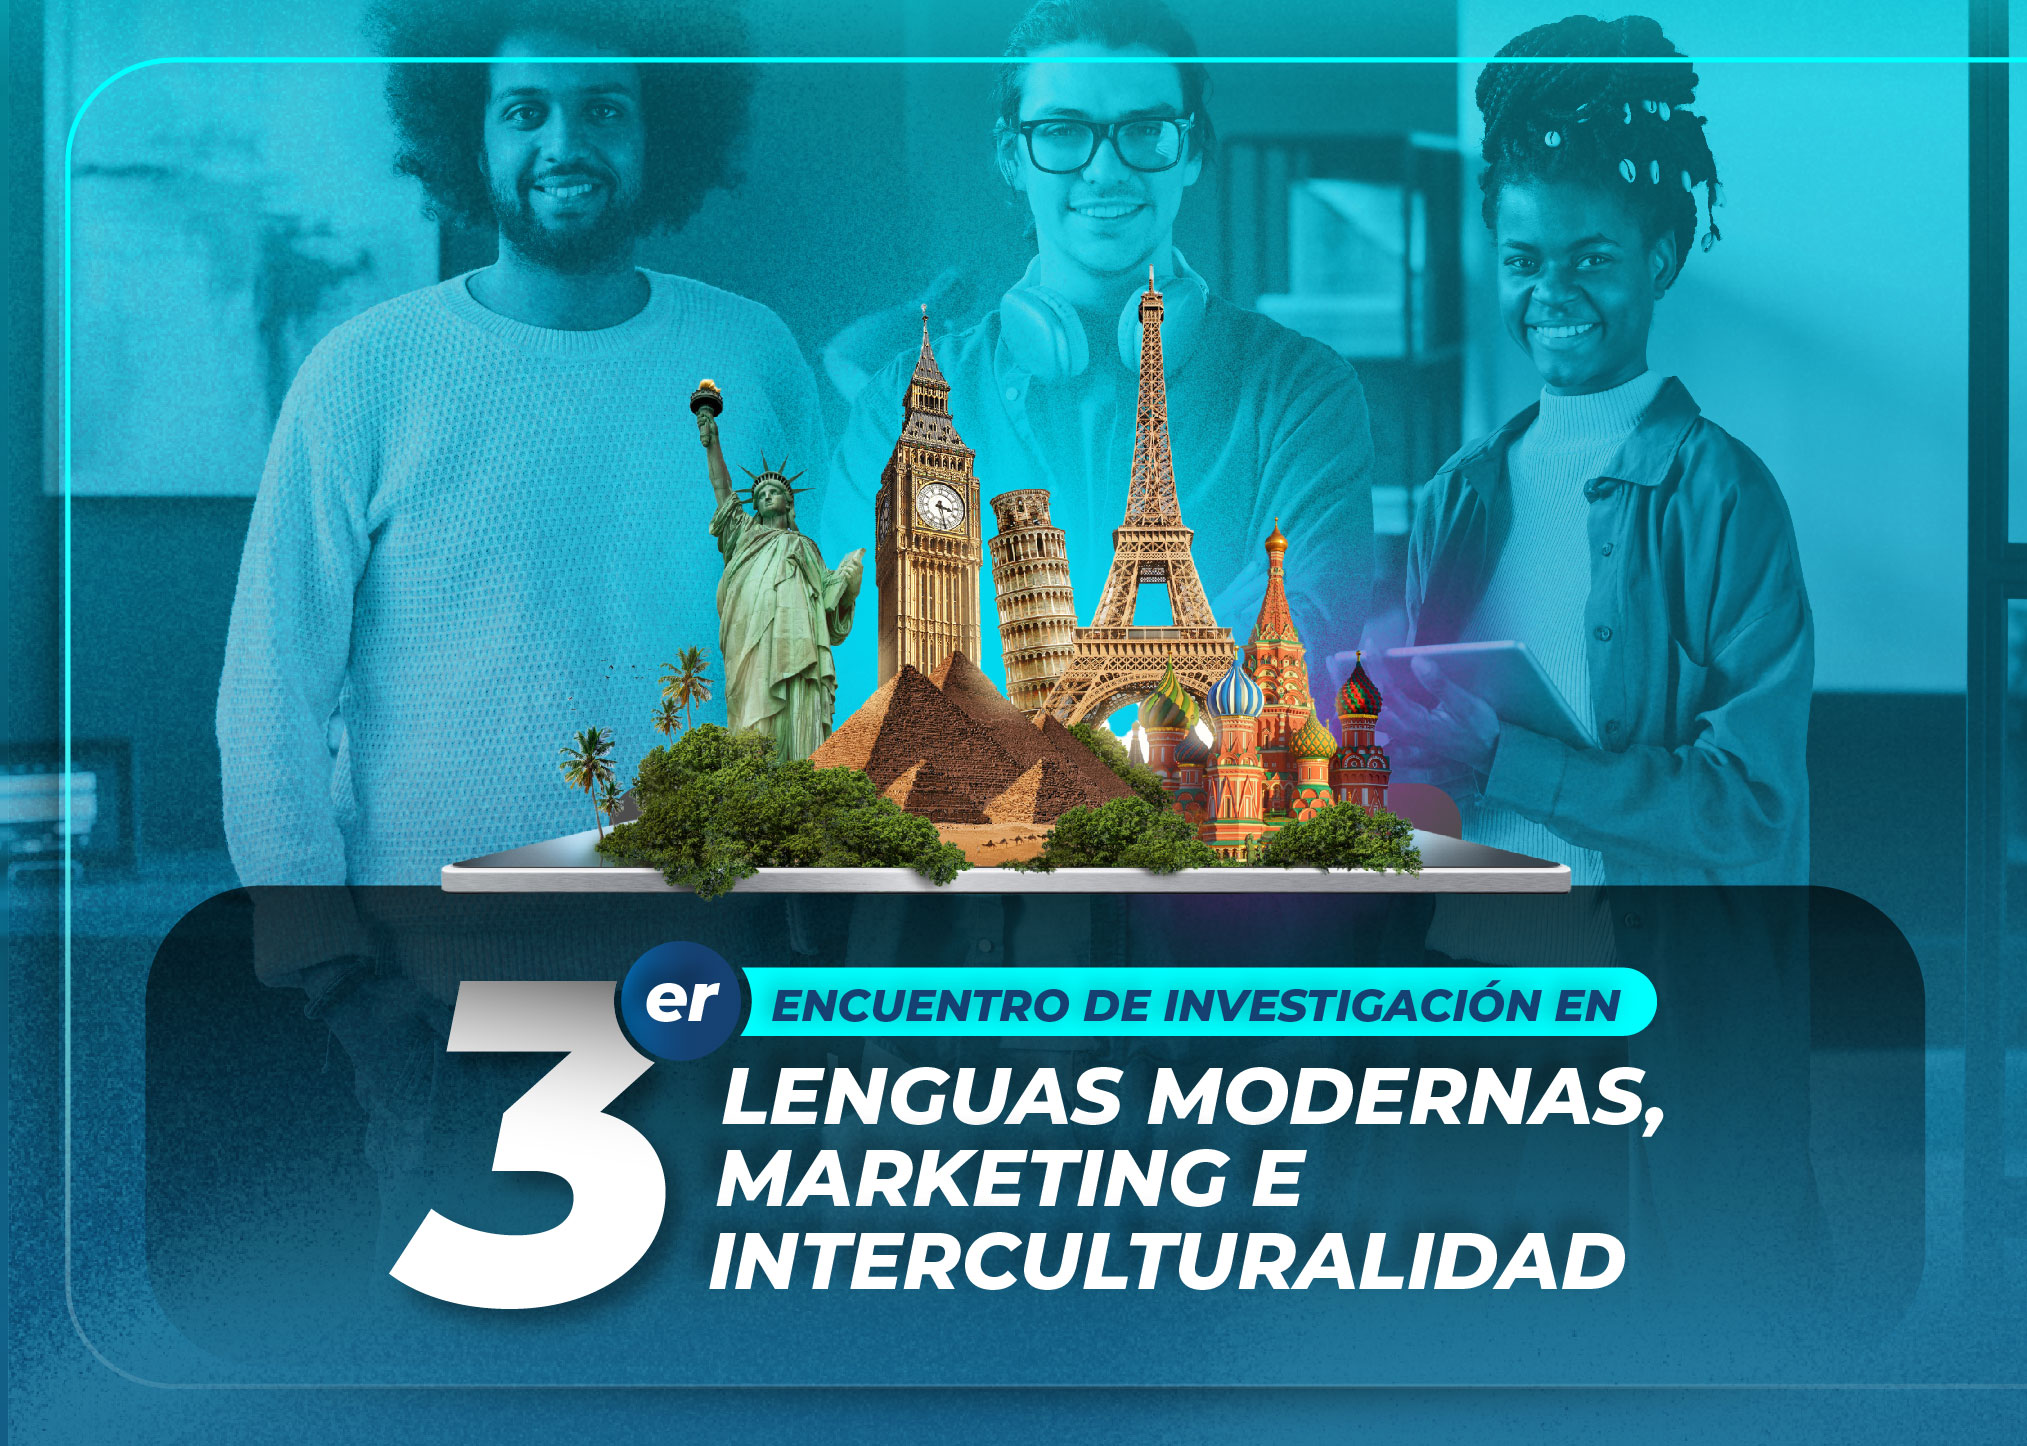 3er encuentro de investigación en lenguas modernas, marketing e interculturalidad